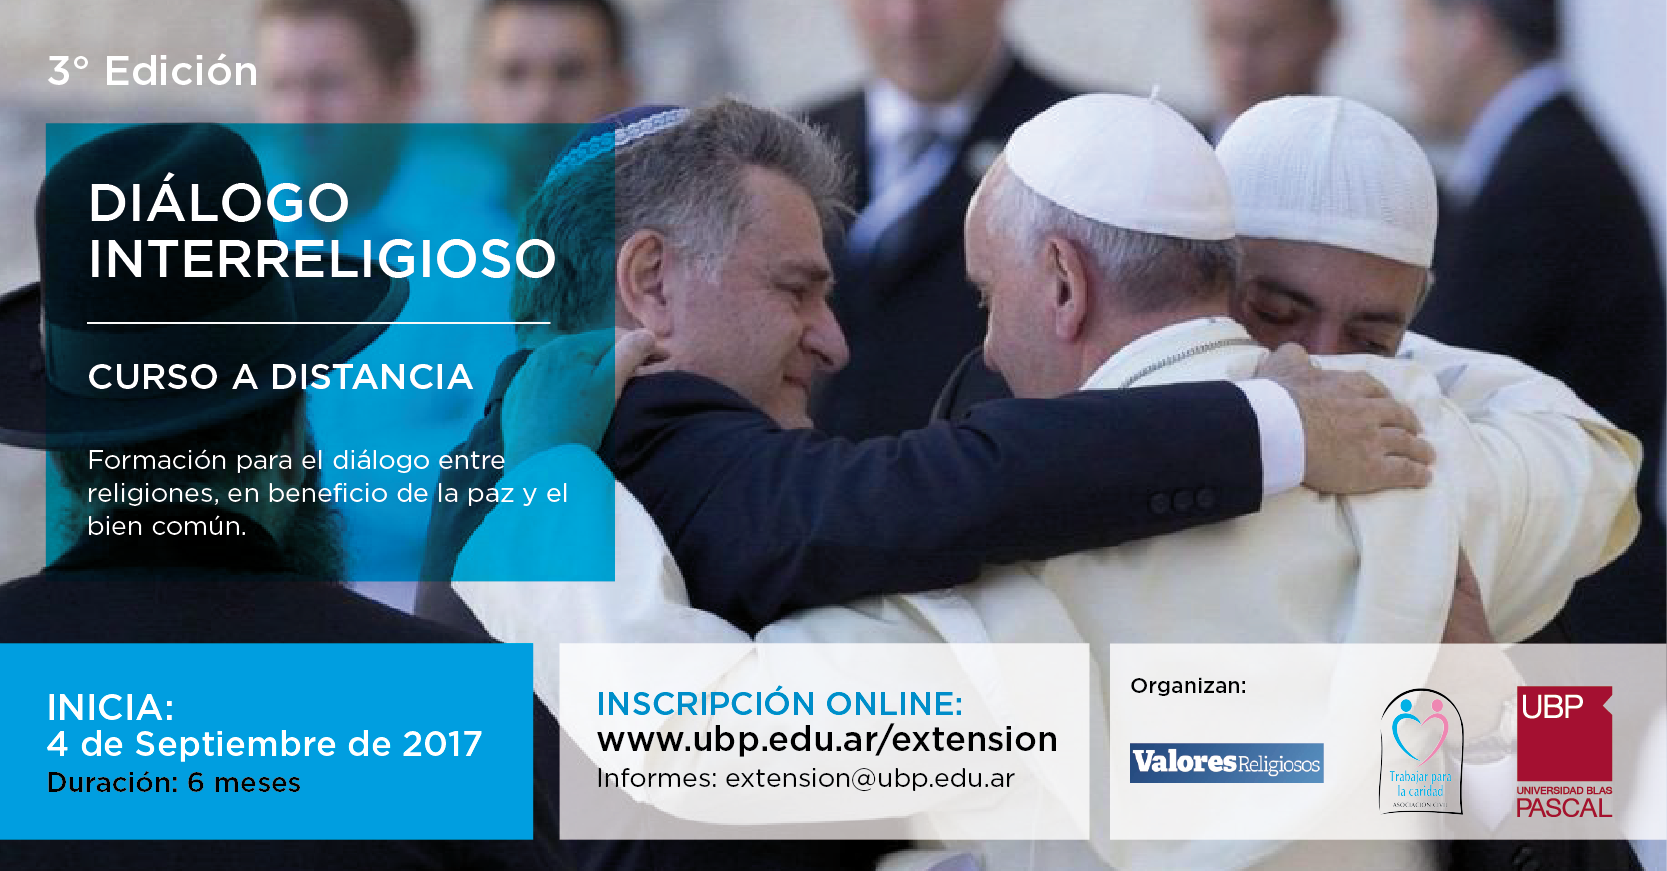 Nueva edición de Diálogo Interreligioso